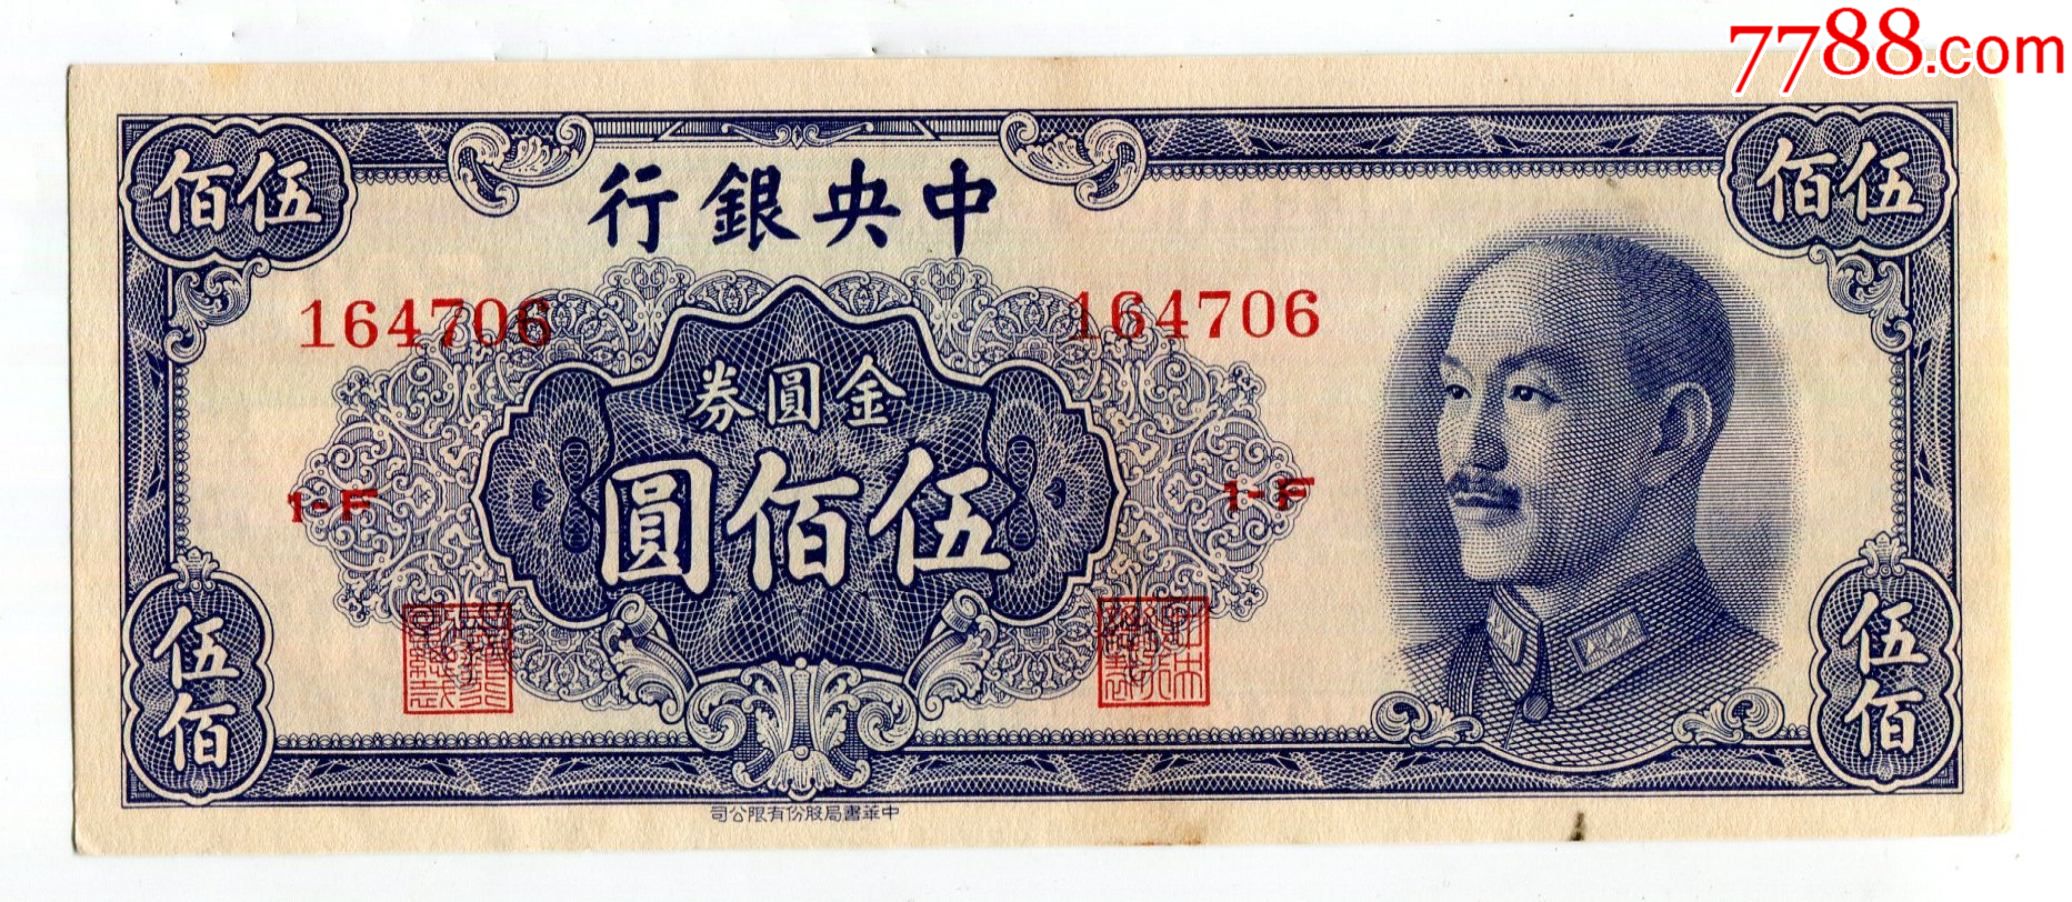 中*银行金圆劵500元伍佰圆蓝色1949年中华书局版金元券